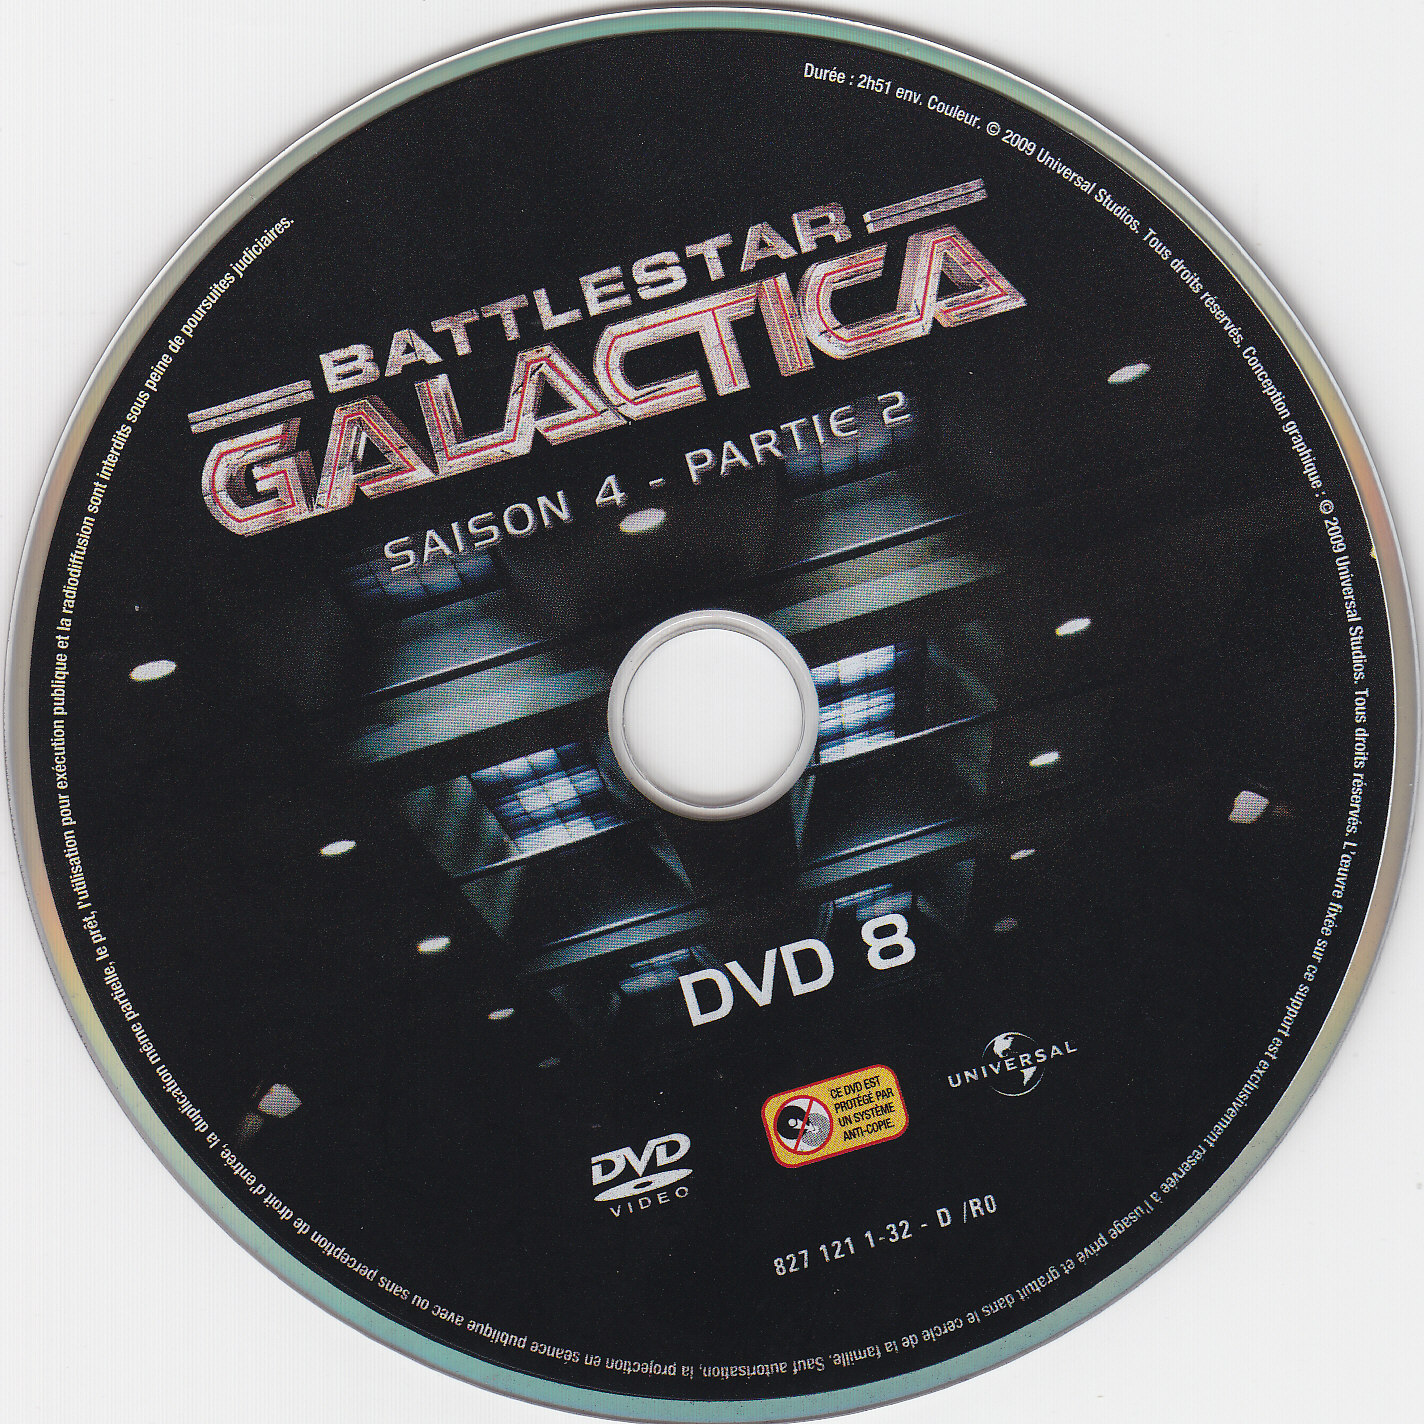 Battlestar Galactica Saison 4 partie 2 DVD 8